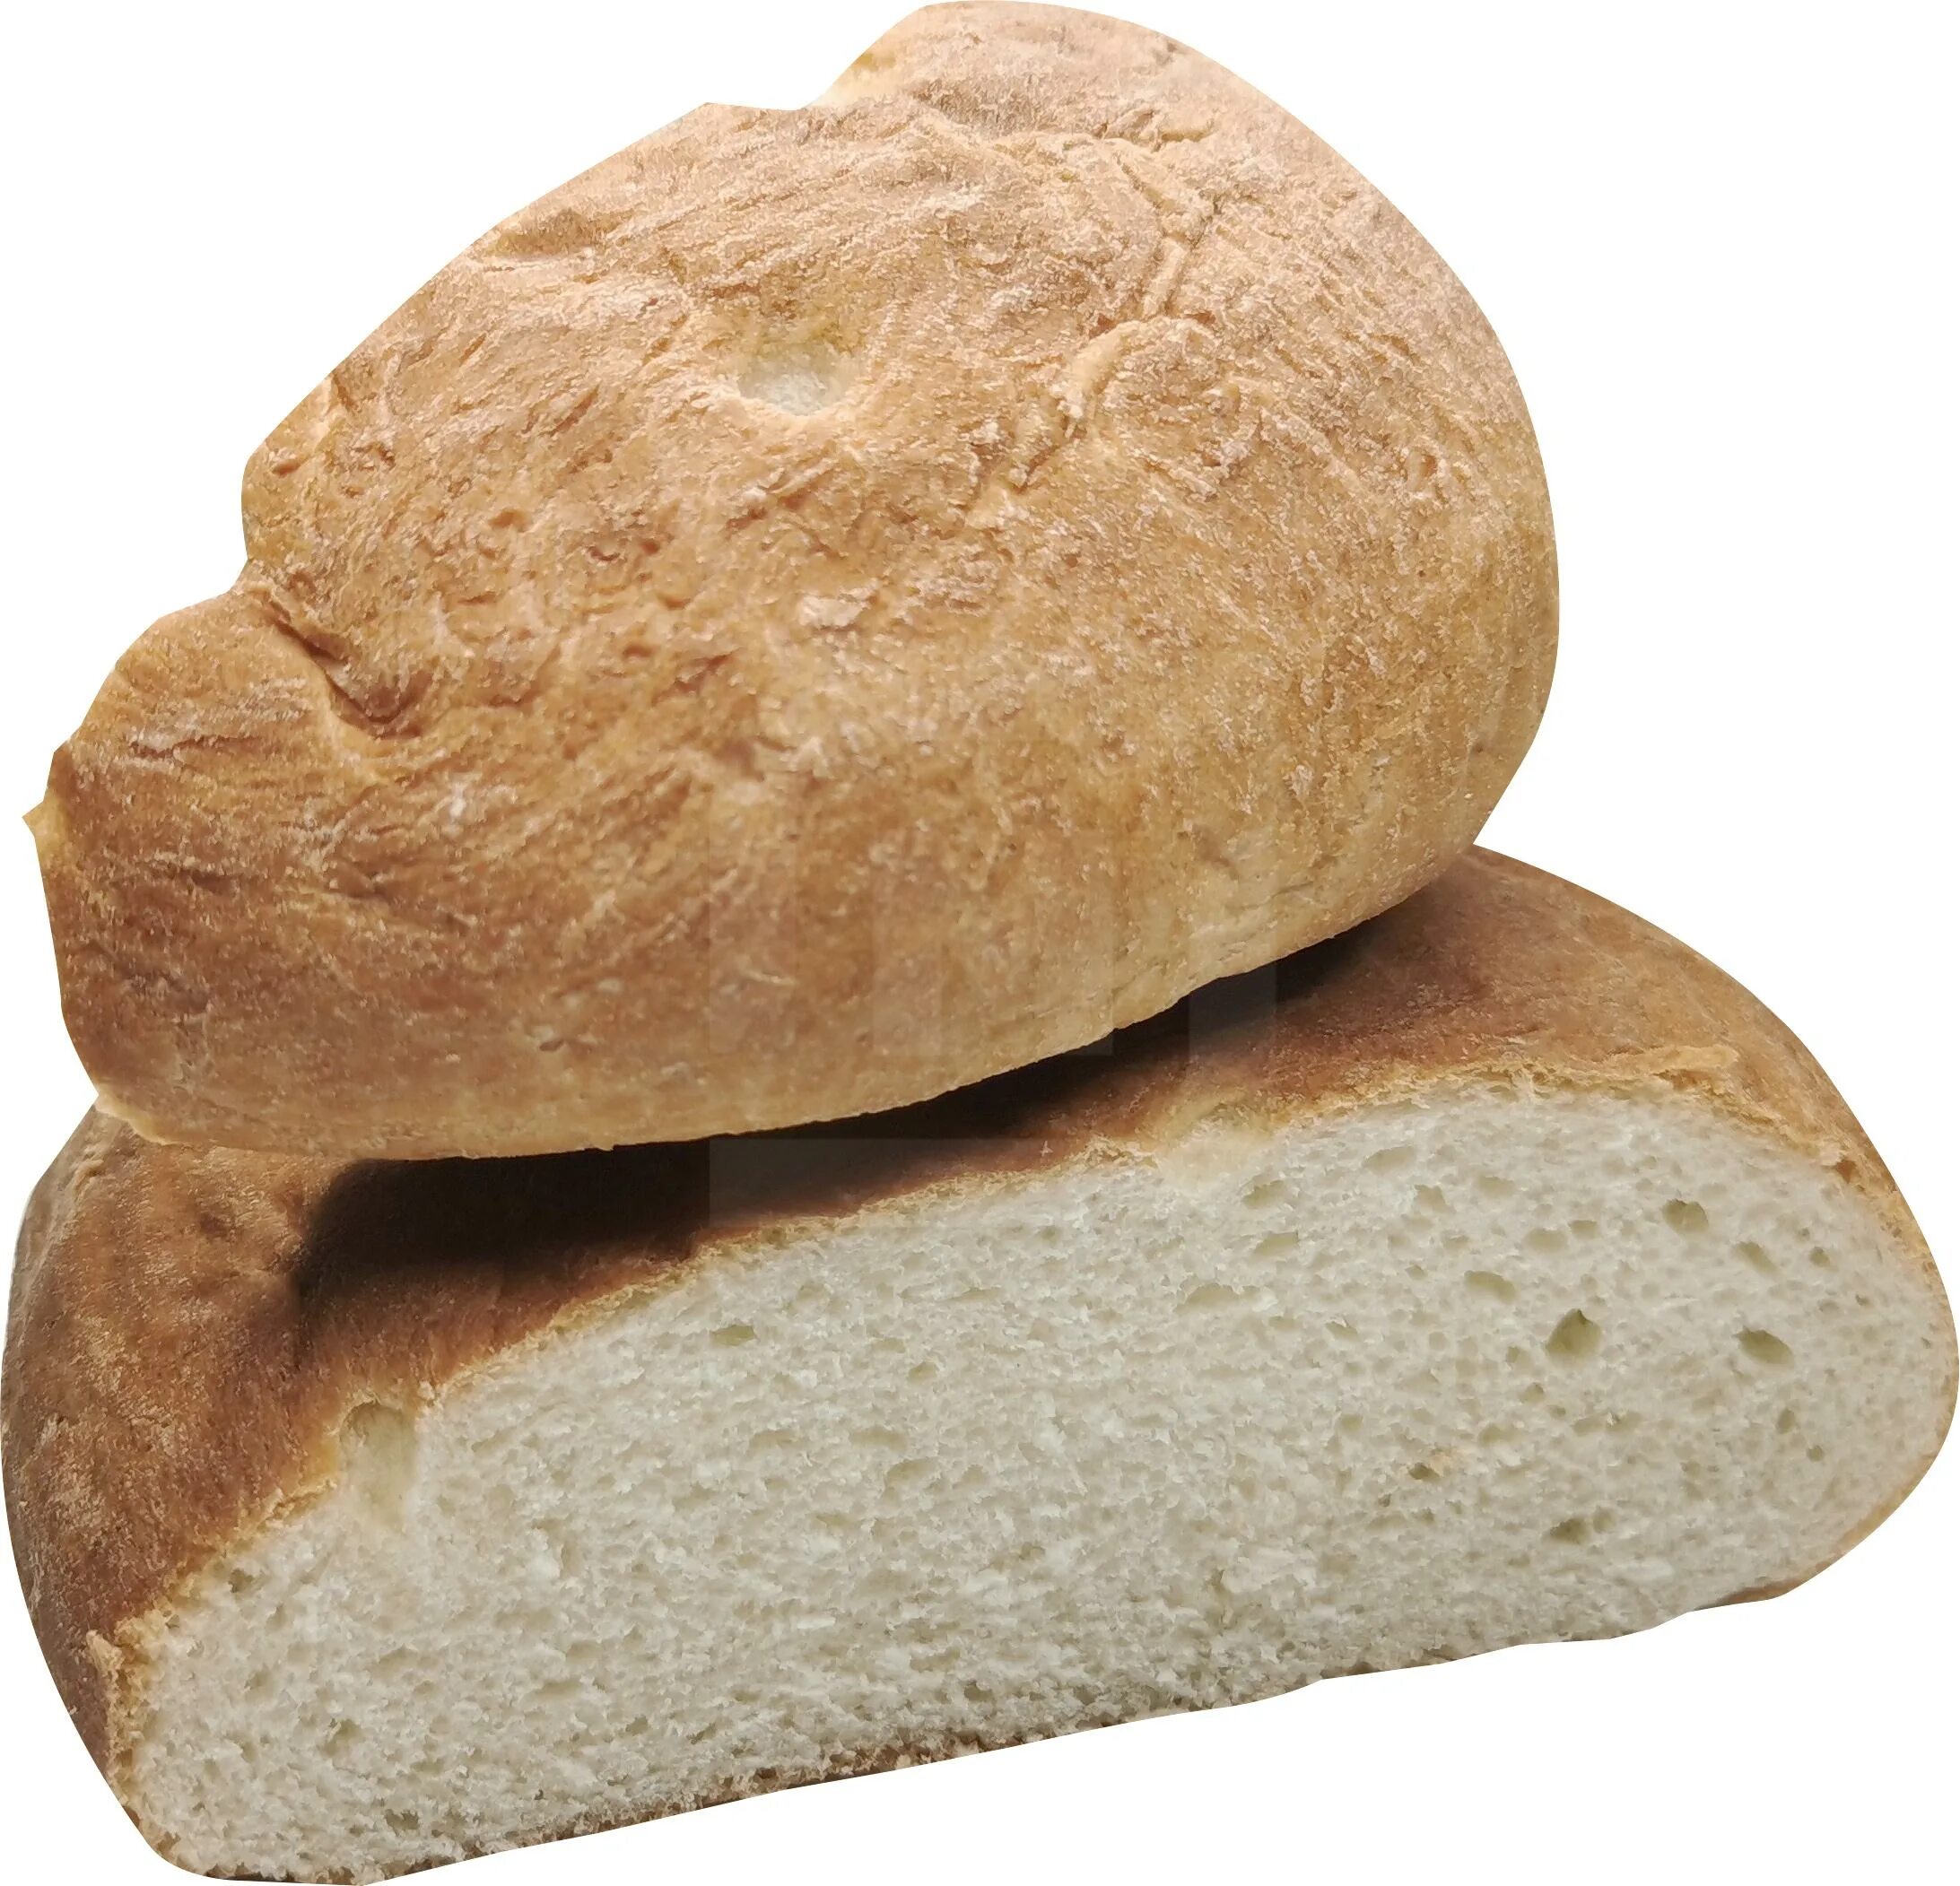 Подовый хлеб это какой. Хлеб пшеничный деревенский подовый. Хлеб деревенский смак. Кузбассхлеб хлеб. Хлеб деревенский подовый 500гр.